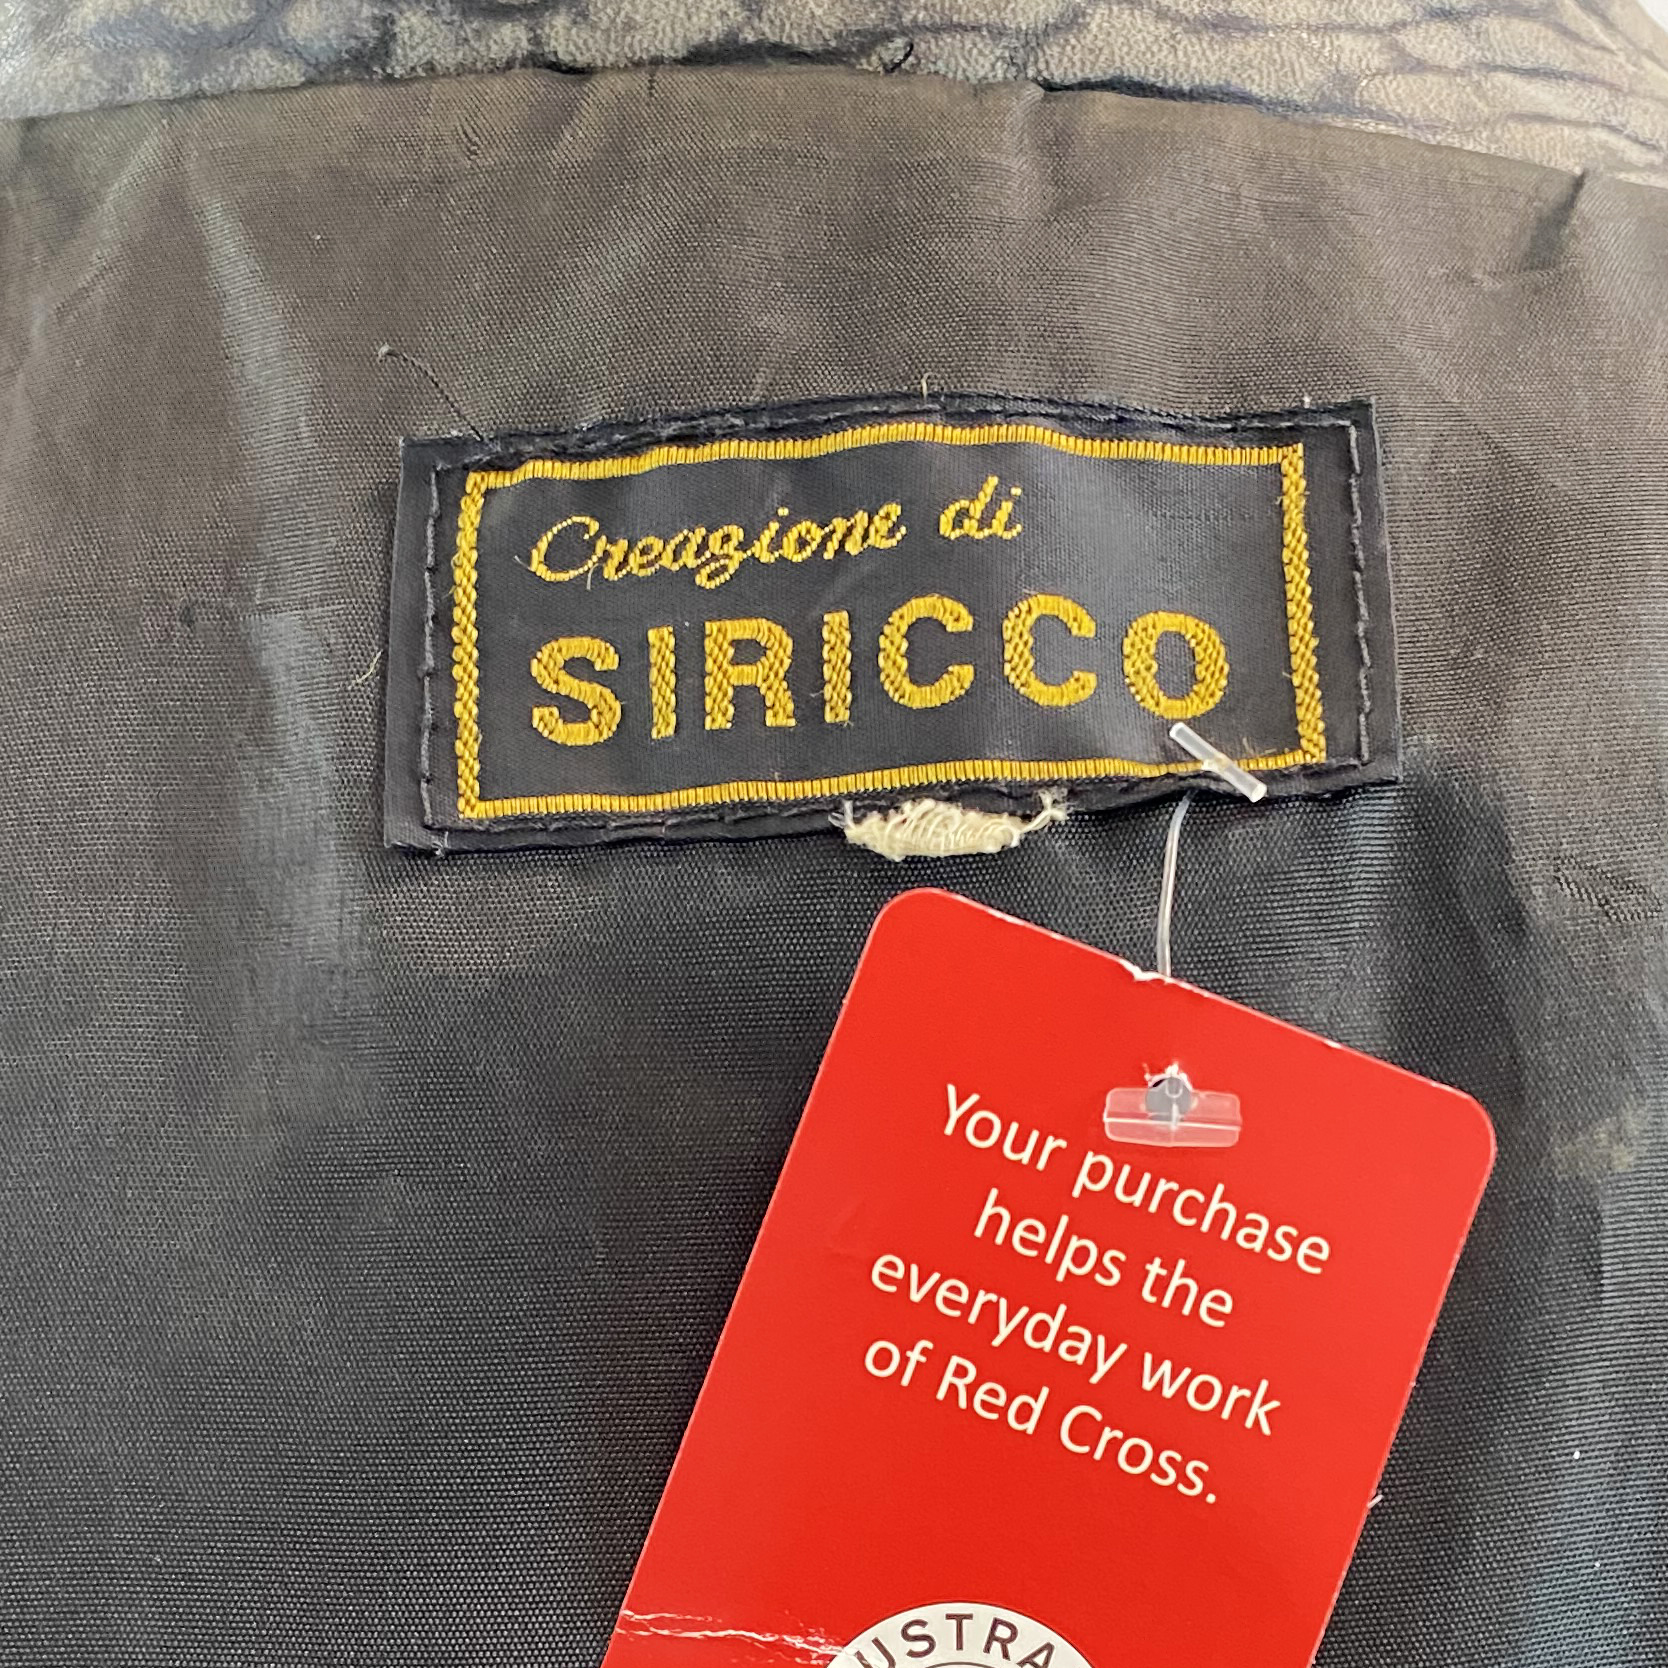 Siricco Vintage 80s Leather Jacket